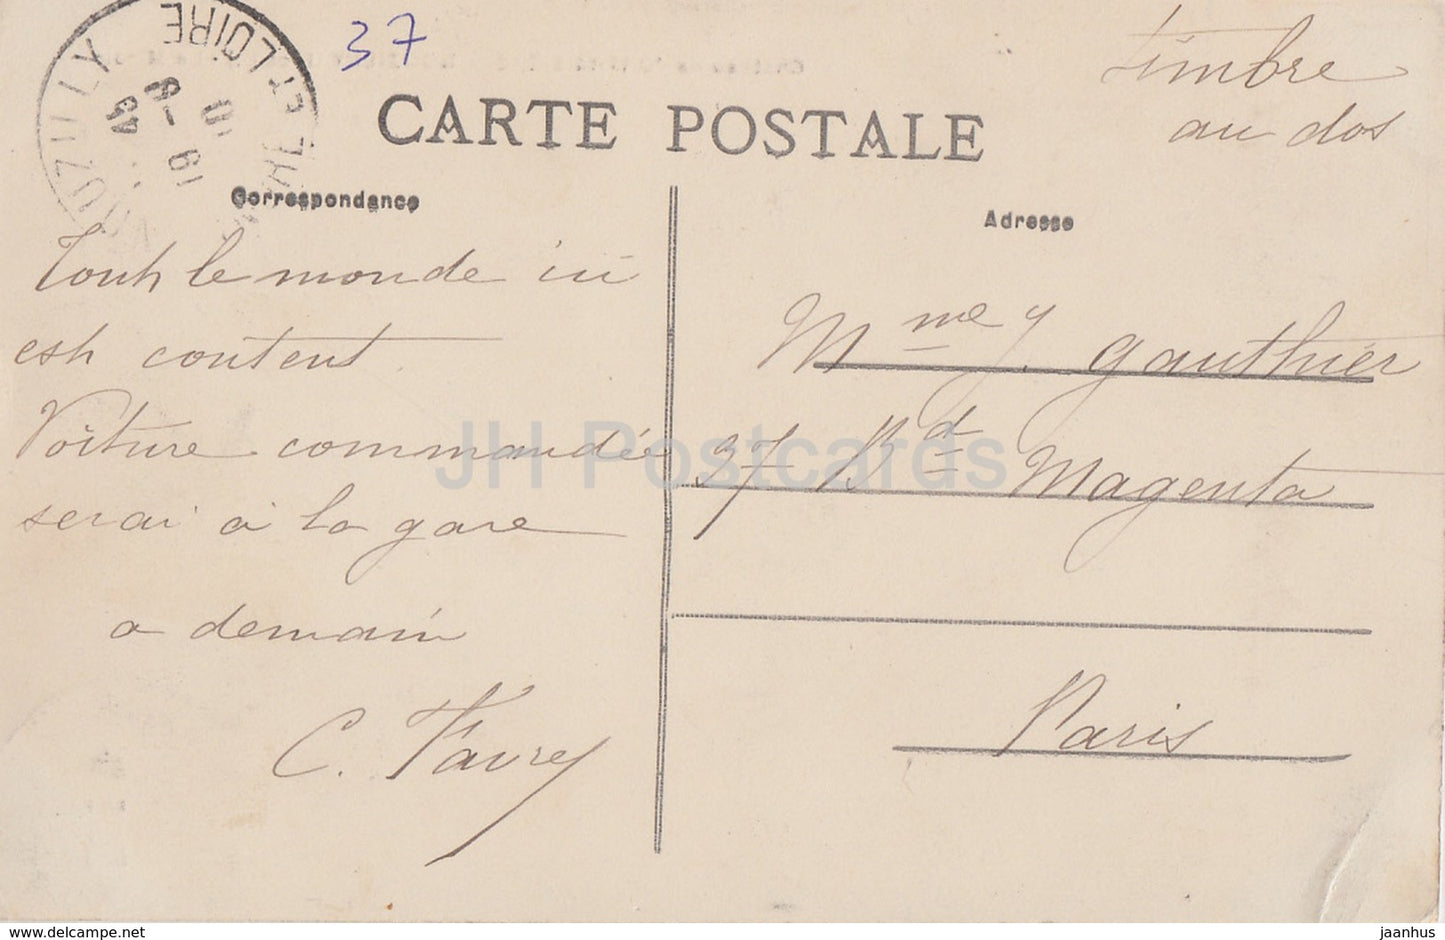 Nouzilly - Chateau de l'Orfraisiere - Le Miroir - castle - old postcard - 1910 - France - used